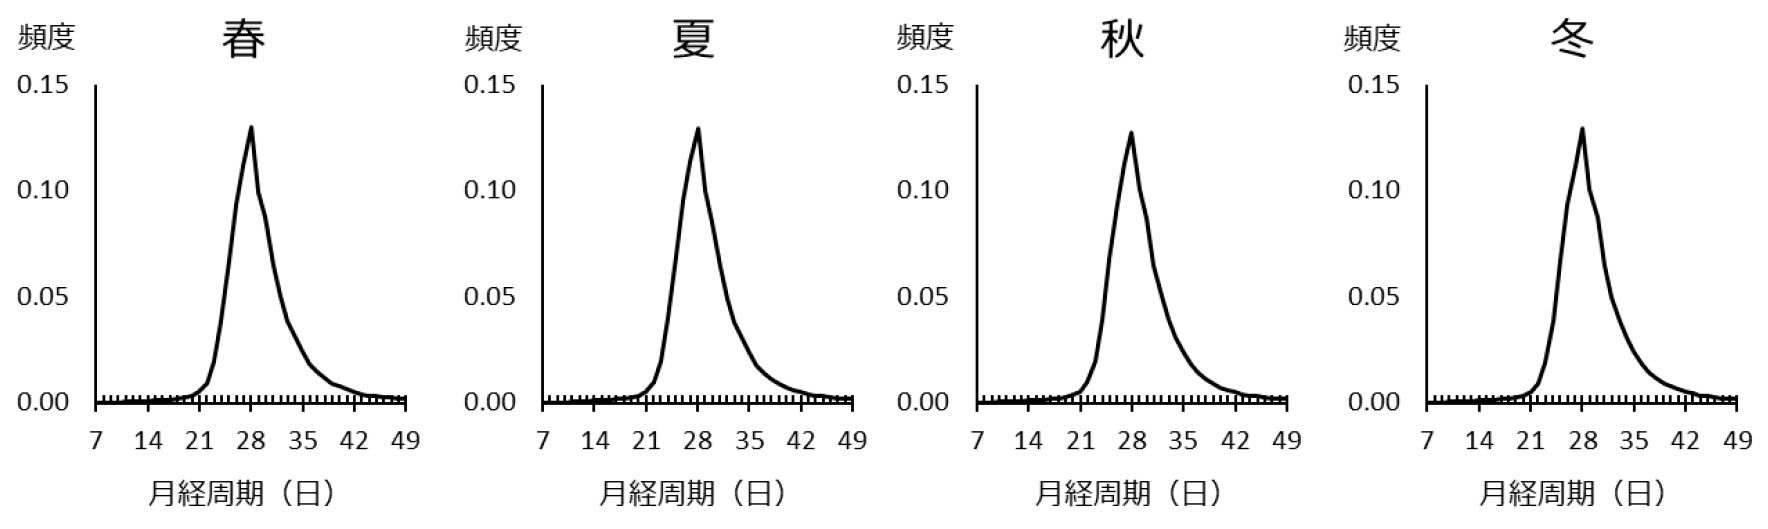 <b>図1●月経周期と季節の関係</b>　季節は日本人女性の月経周期にほとんど影響がない（出所：2020年1月23日付、国立成育医療研究センター・エムティーアイによるプレスリリース、図2～4とも）